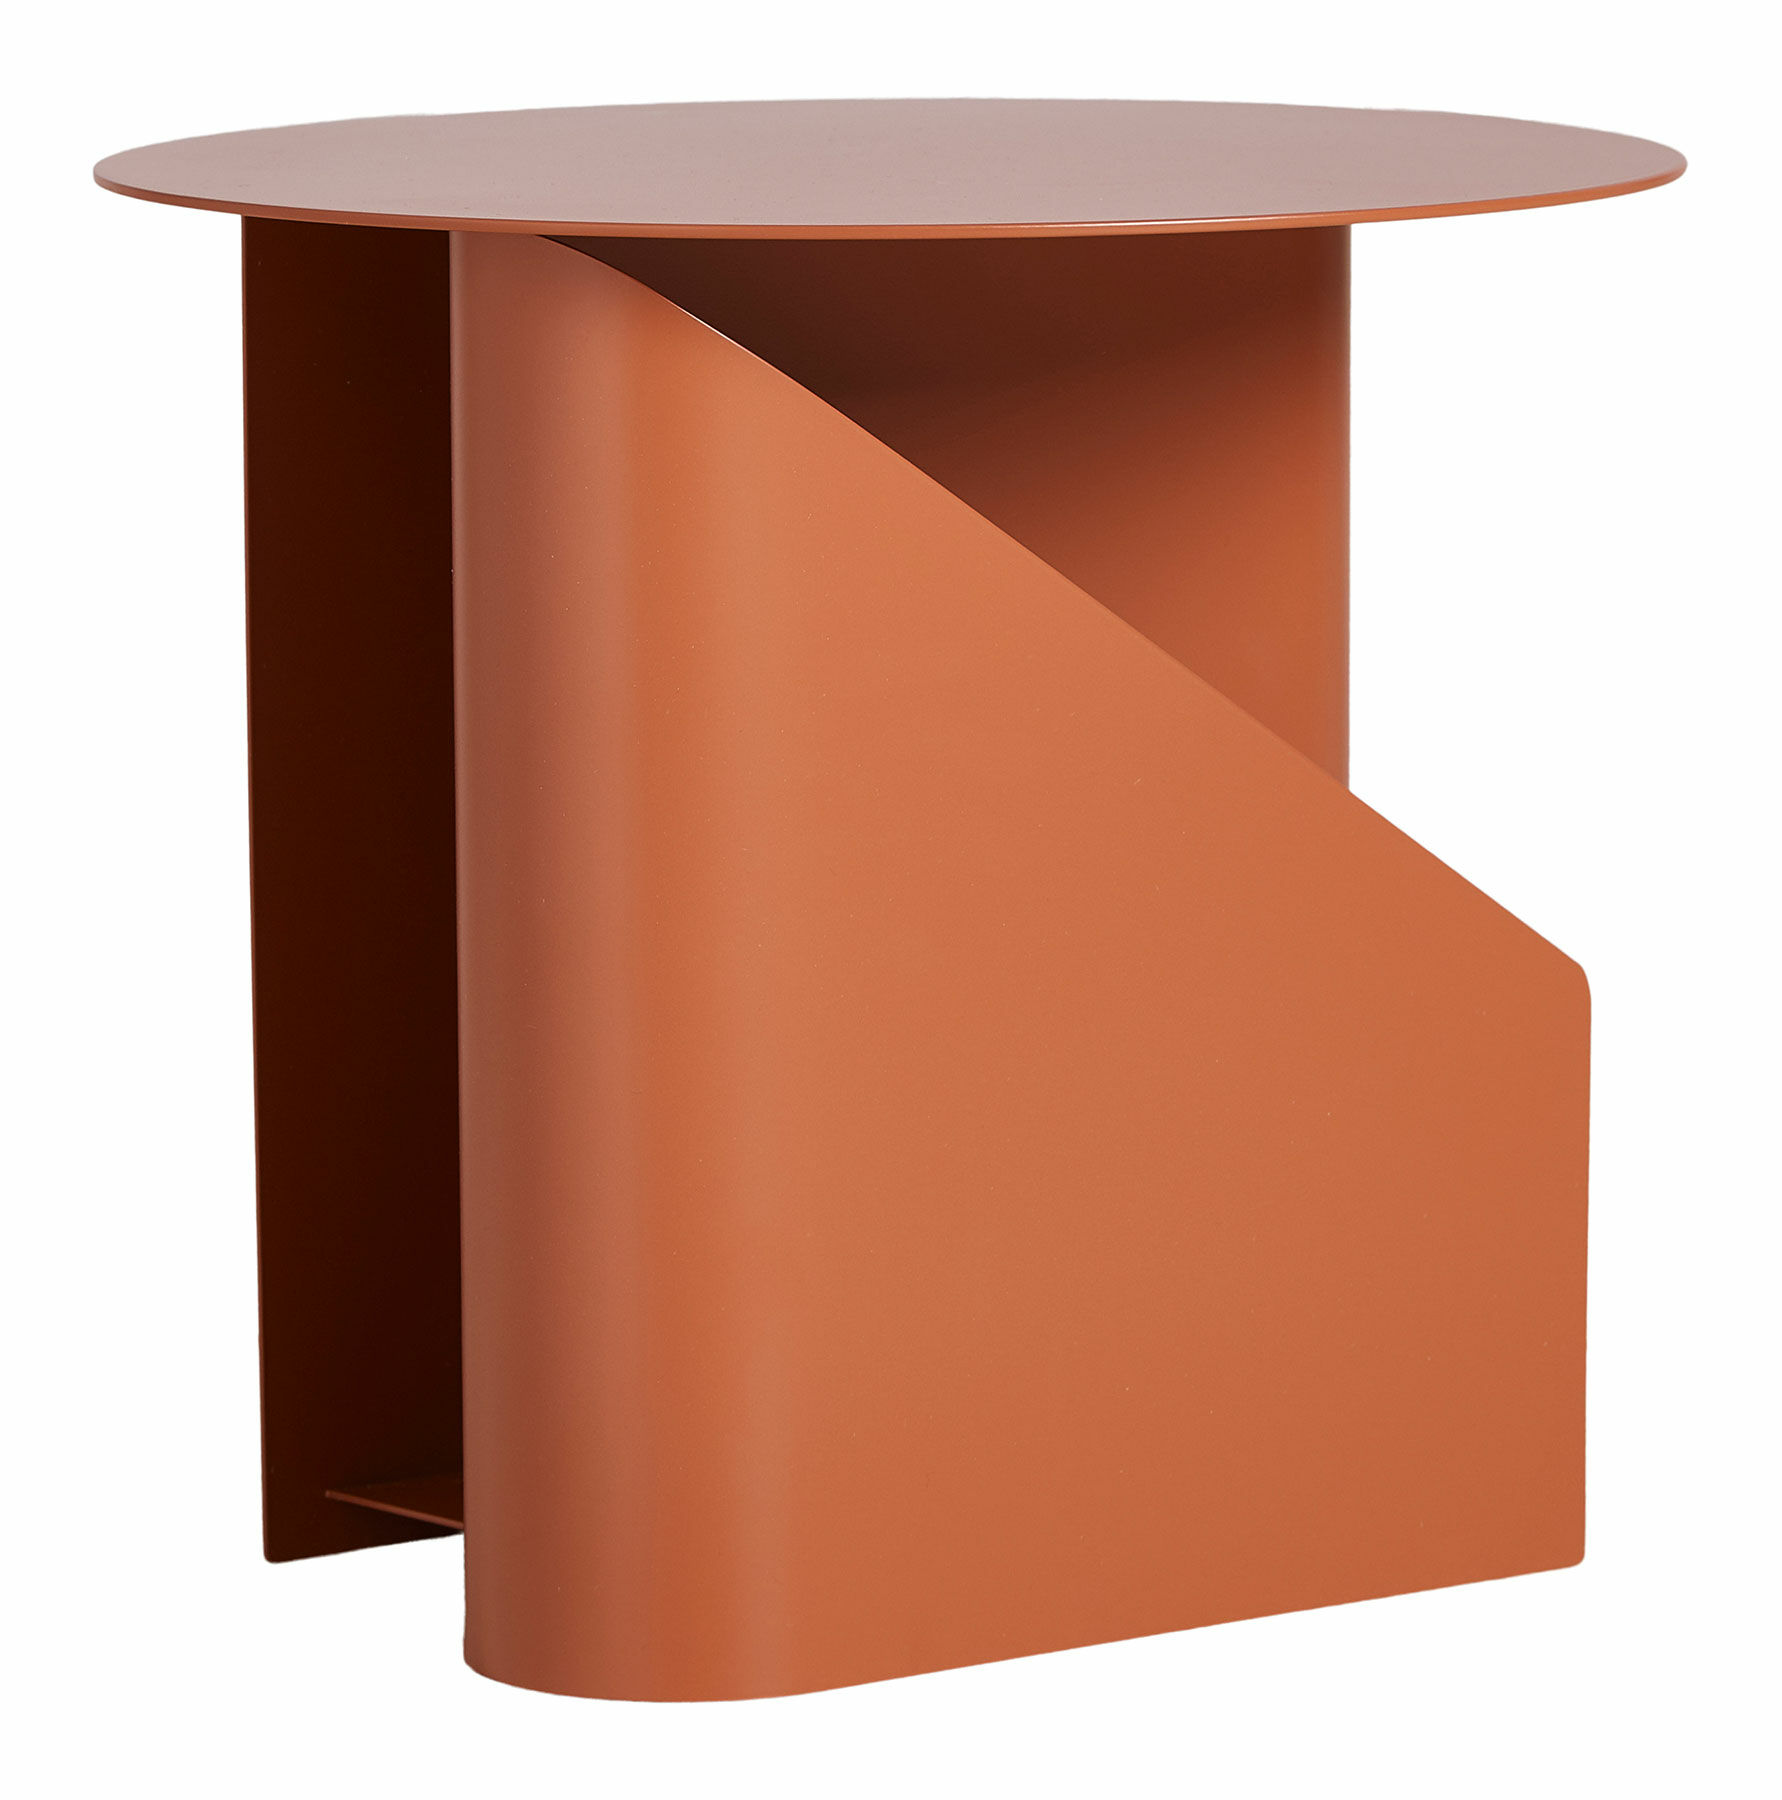 Side table "Sentrum", version burnt orange by Woud